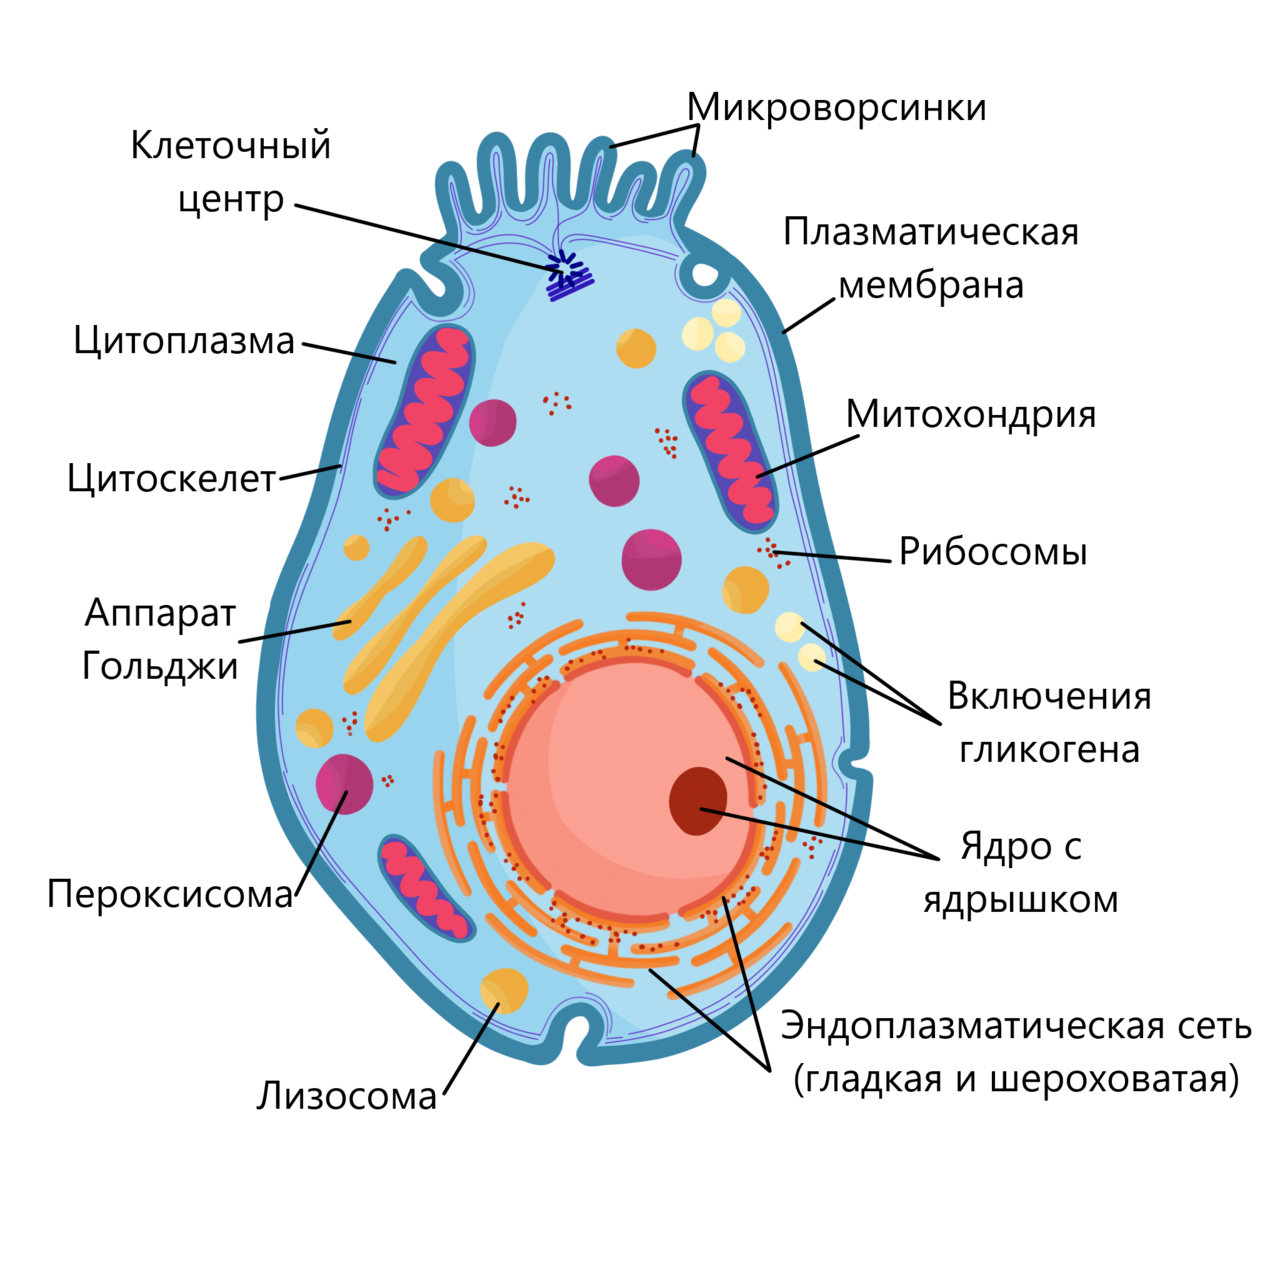 Клетка пояснение. Строение эукариотической клетки животного схема. Схема строения эукариотной клетки. Схема эукариотической клетки животного. Структура эукариотической животной клетки.